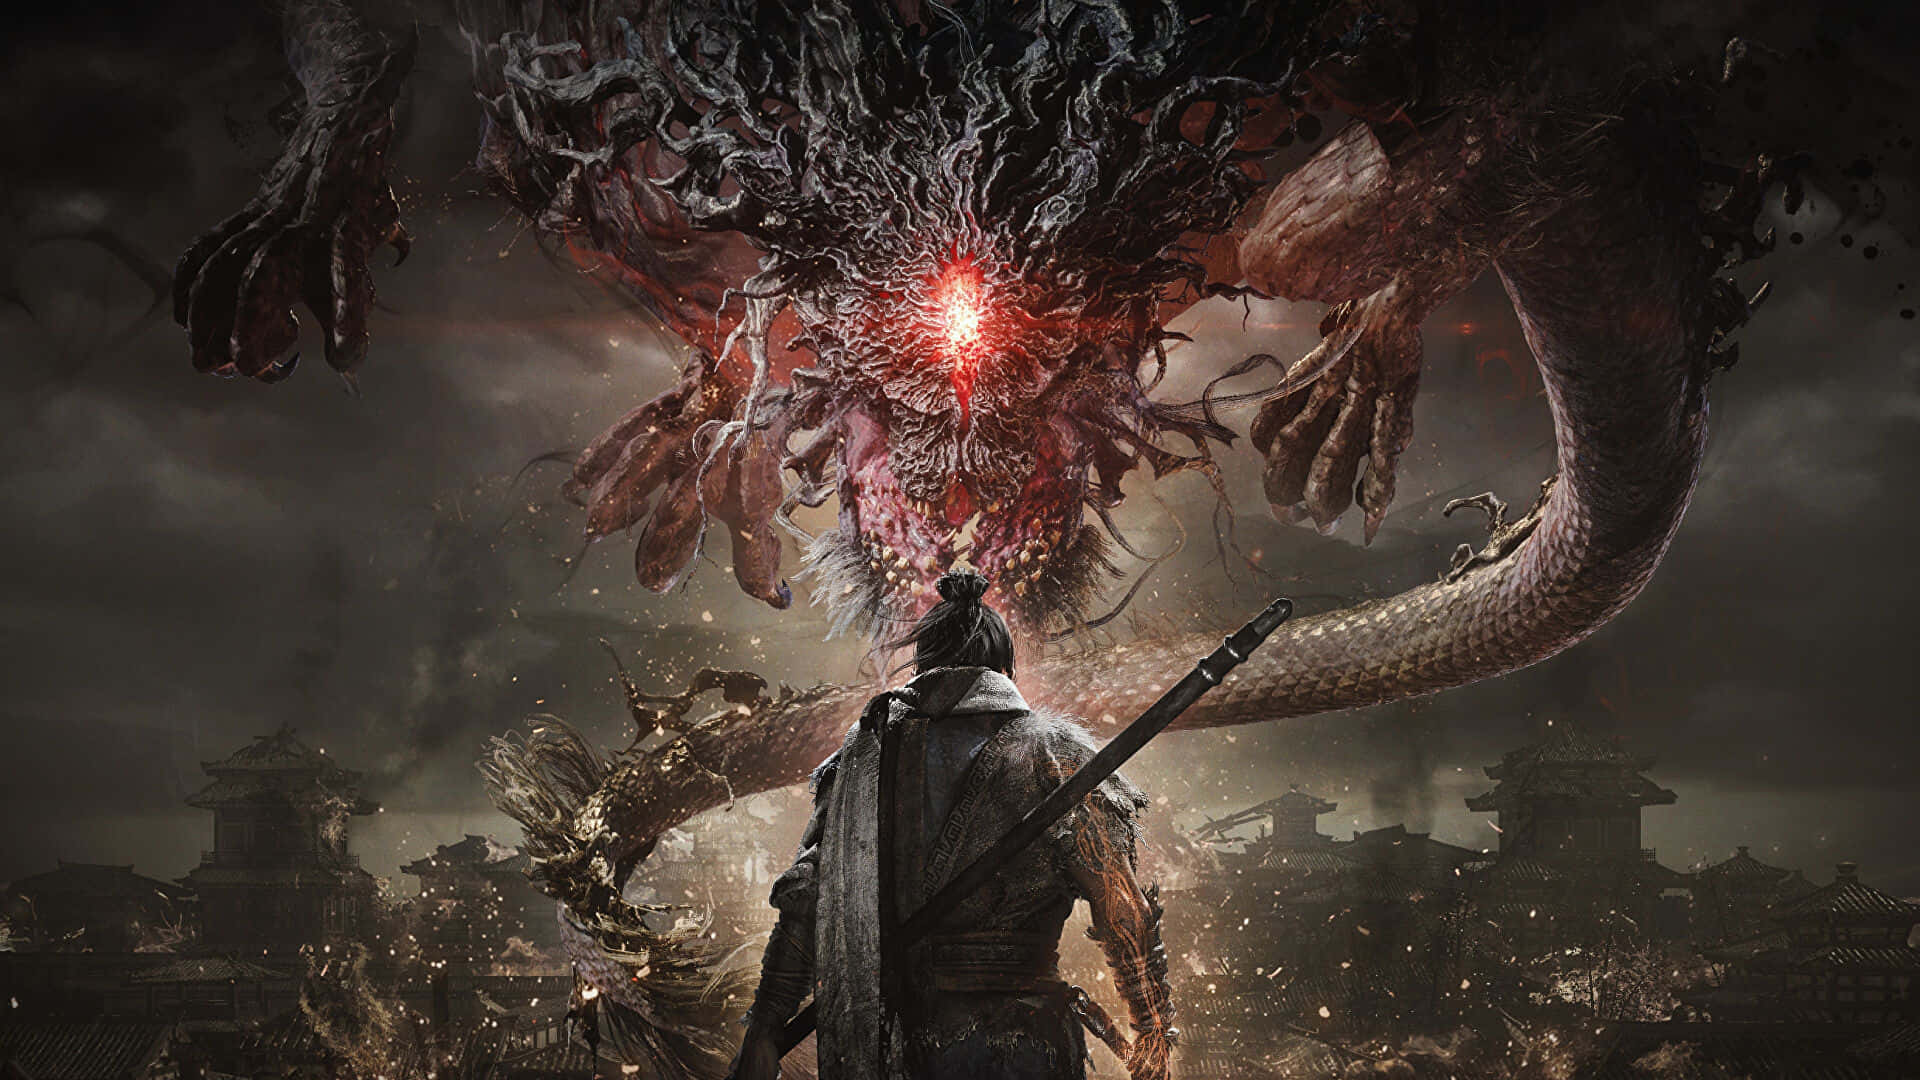 Besteshintergrundbild Von Shadow Of War: Ein Krieger, Der Einem Drachen Entgegentritt.